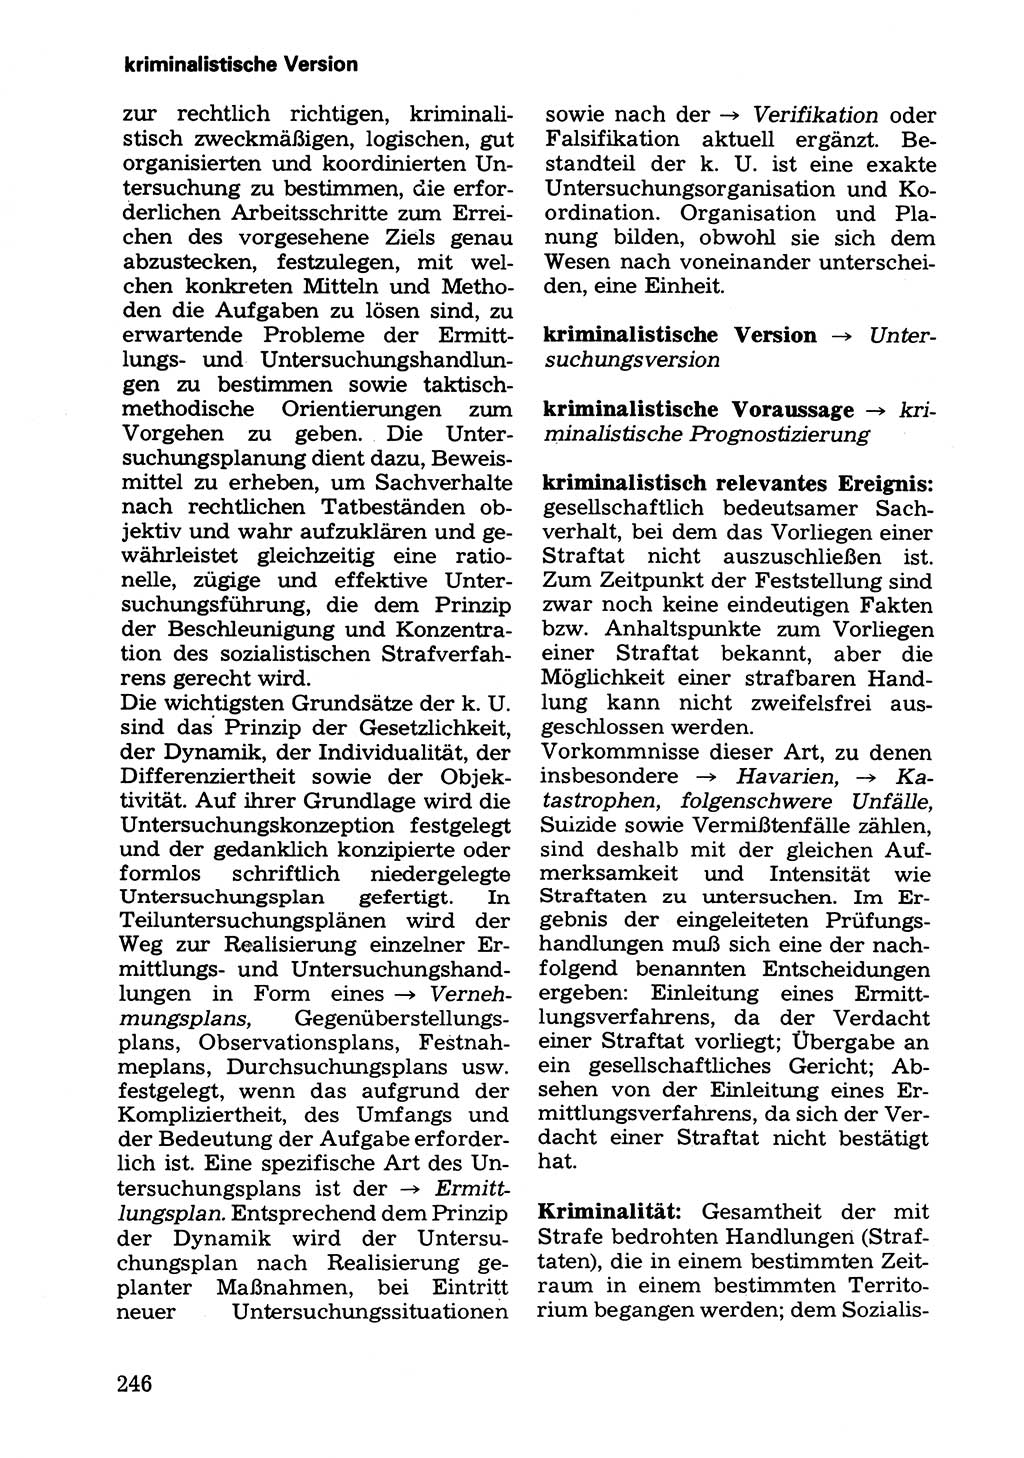 Wörterbuch der sozialistischen Kriminalistik [Deutsche Demokratische Republik (DDR)] 1981, Seite 246 (Wb. soz. Krim. DDR 1981, S. 246)